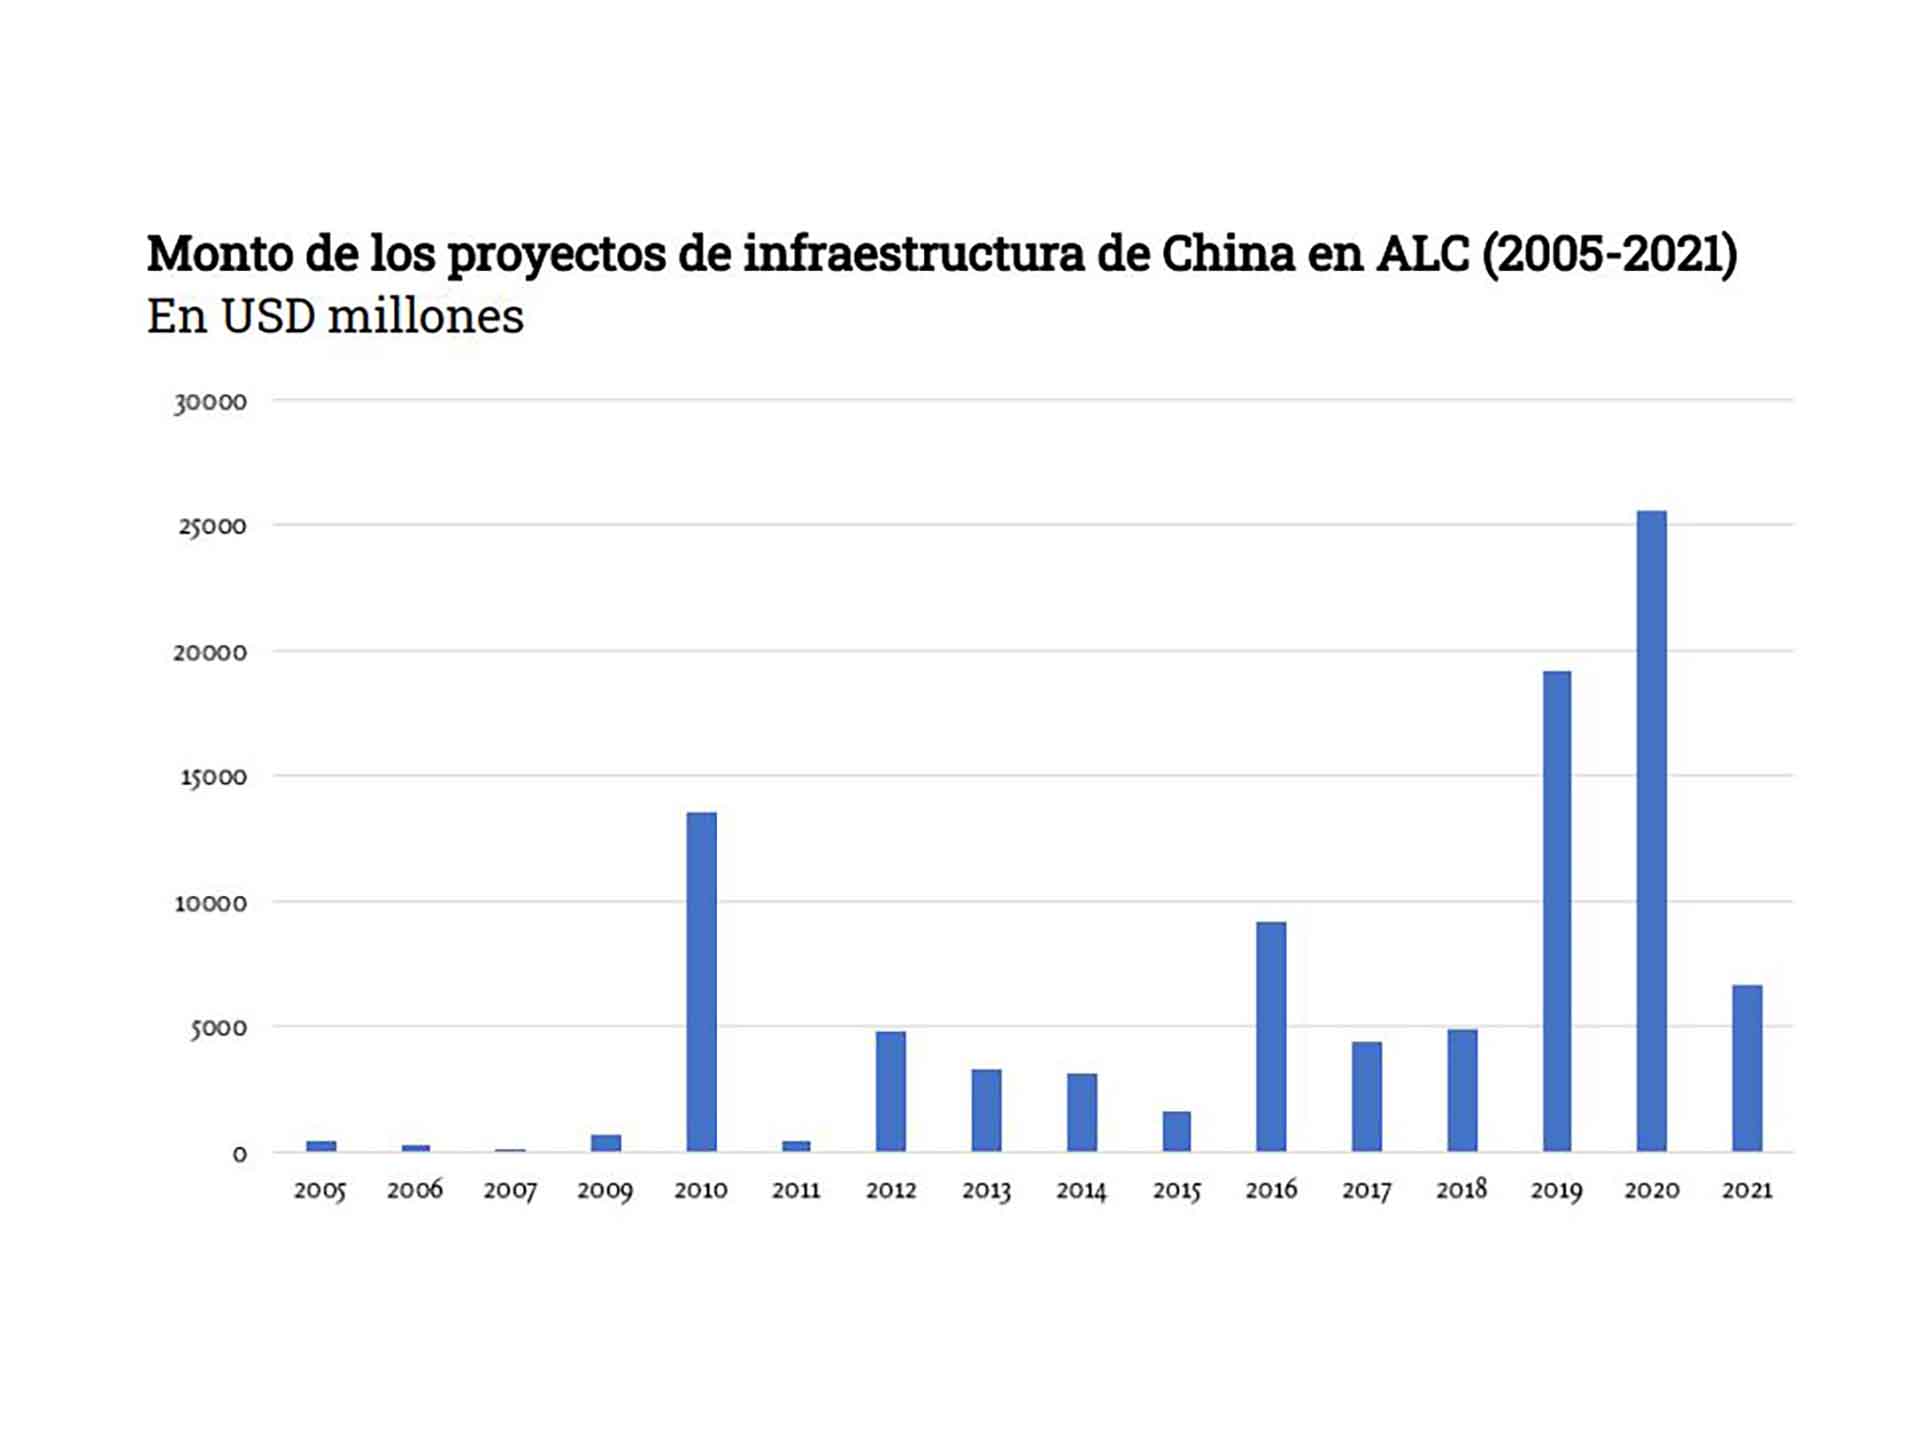 La evolución de las inversiones chinas en América Latina, según un estudio del especialista Enrique Dussel Peters